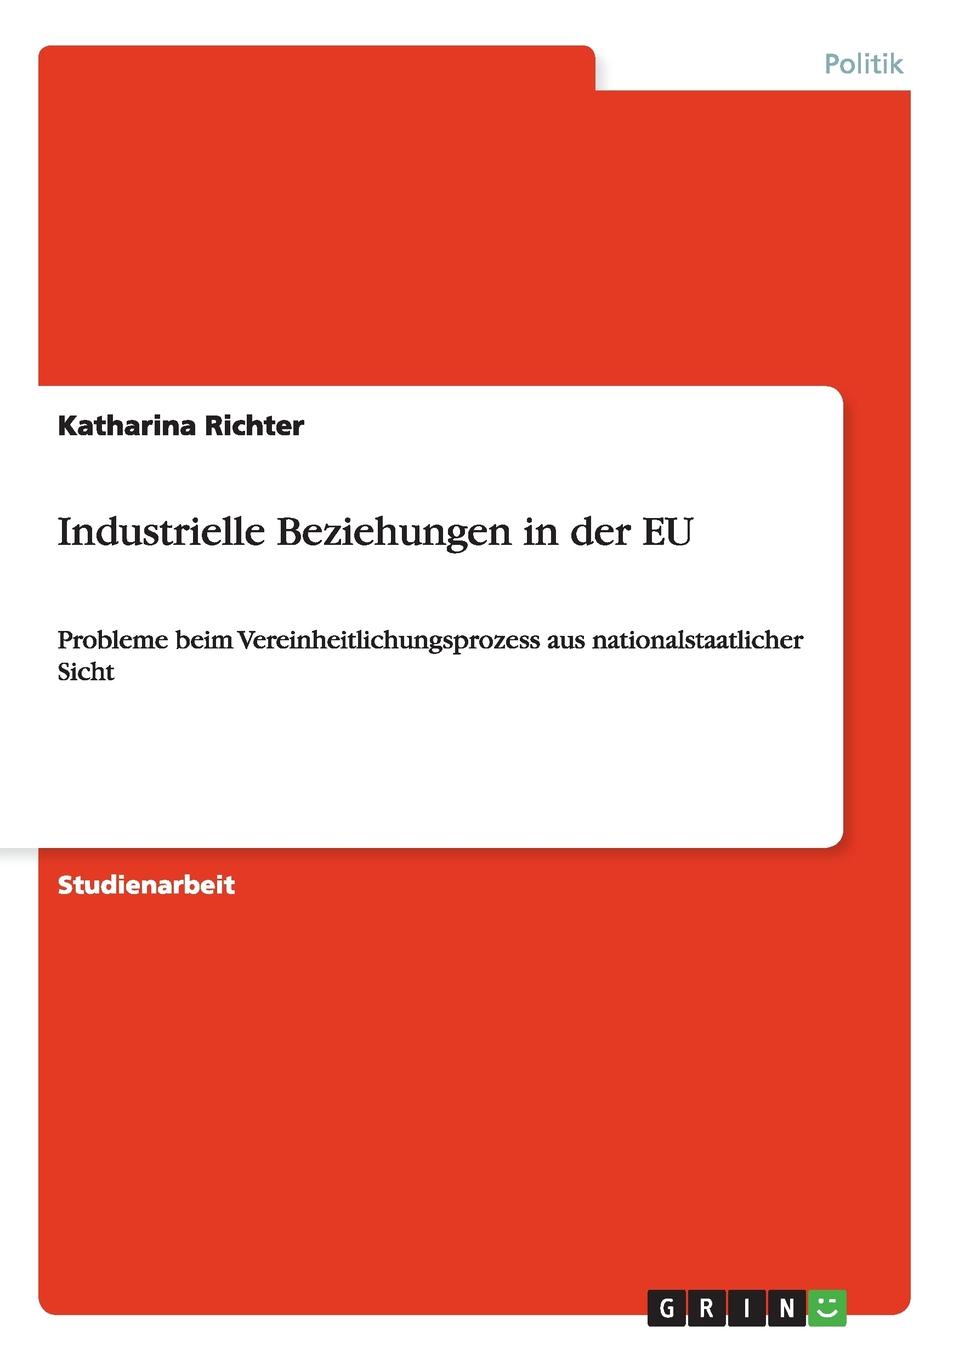 Industrielle Beziehungen in der EU